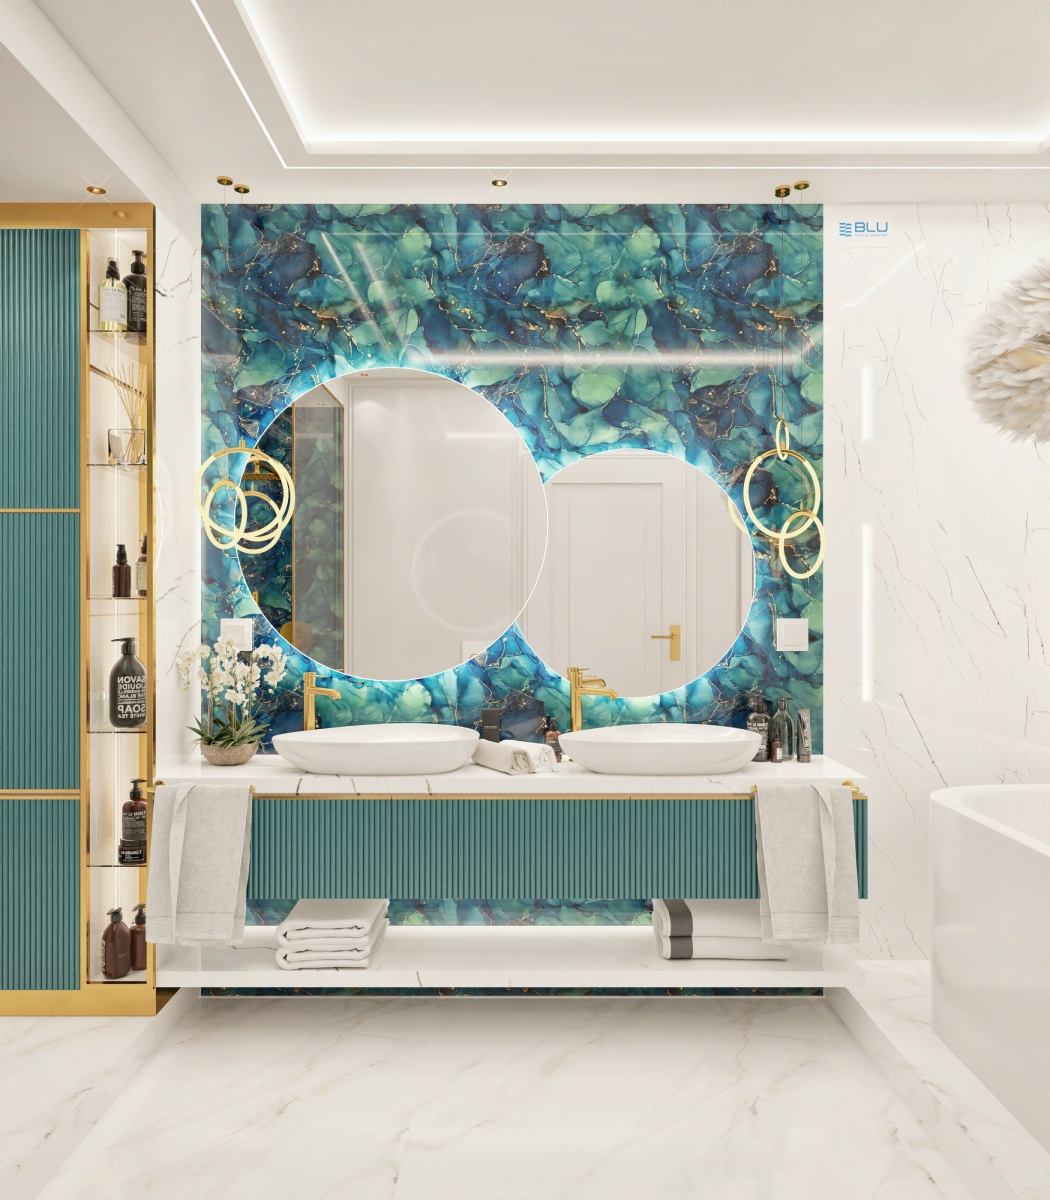 Owalna umywalka w nowoczesnym salonie kąpielowym